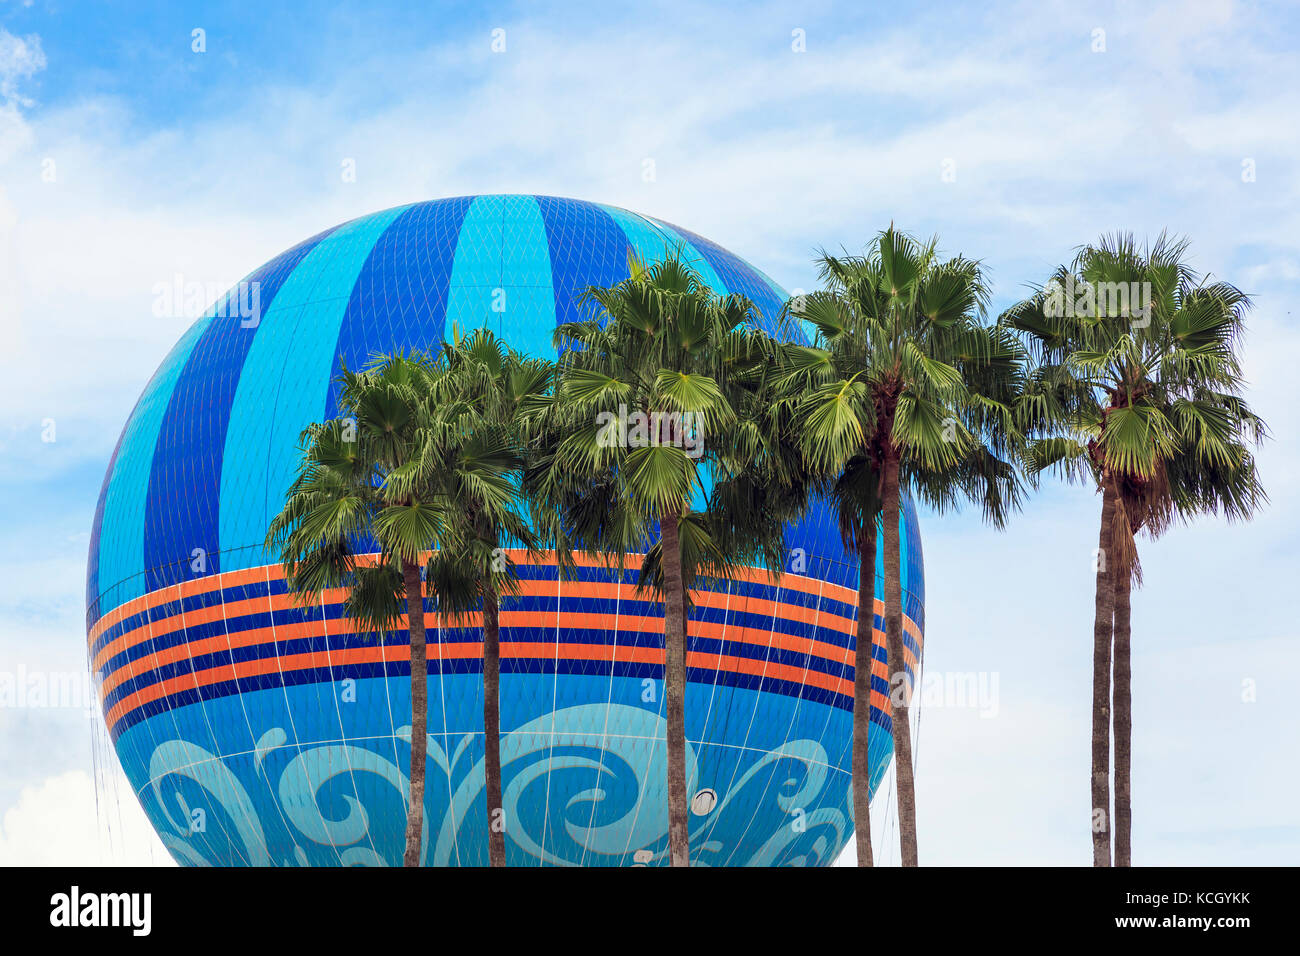 Hélium Ballon utilisé pour aux touristes de faire un court voyage aérien au-dessus des ressorts de Disney, Orlando, Floride, USA Banque D'Images